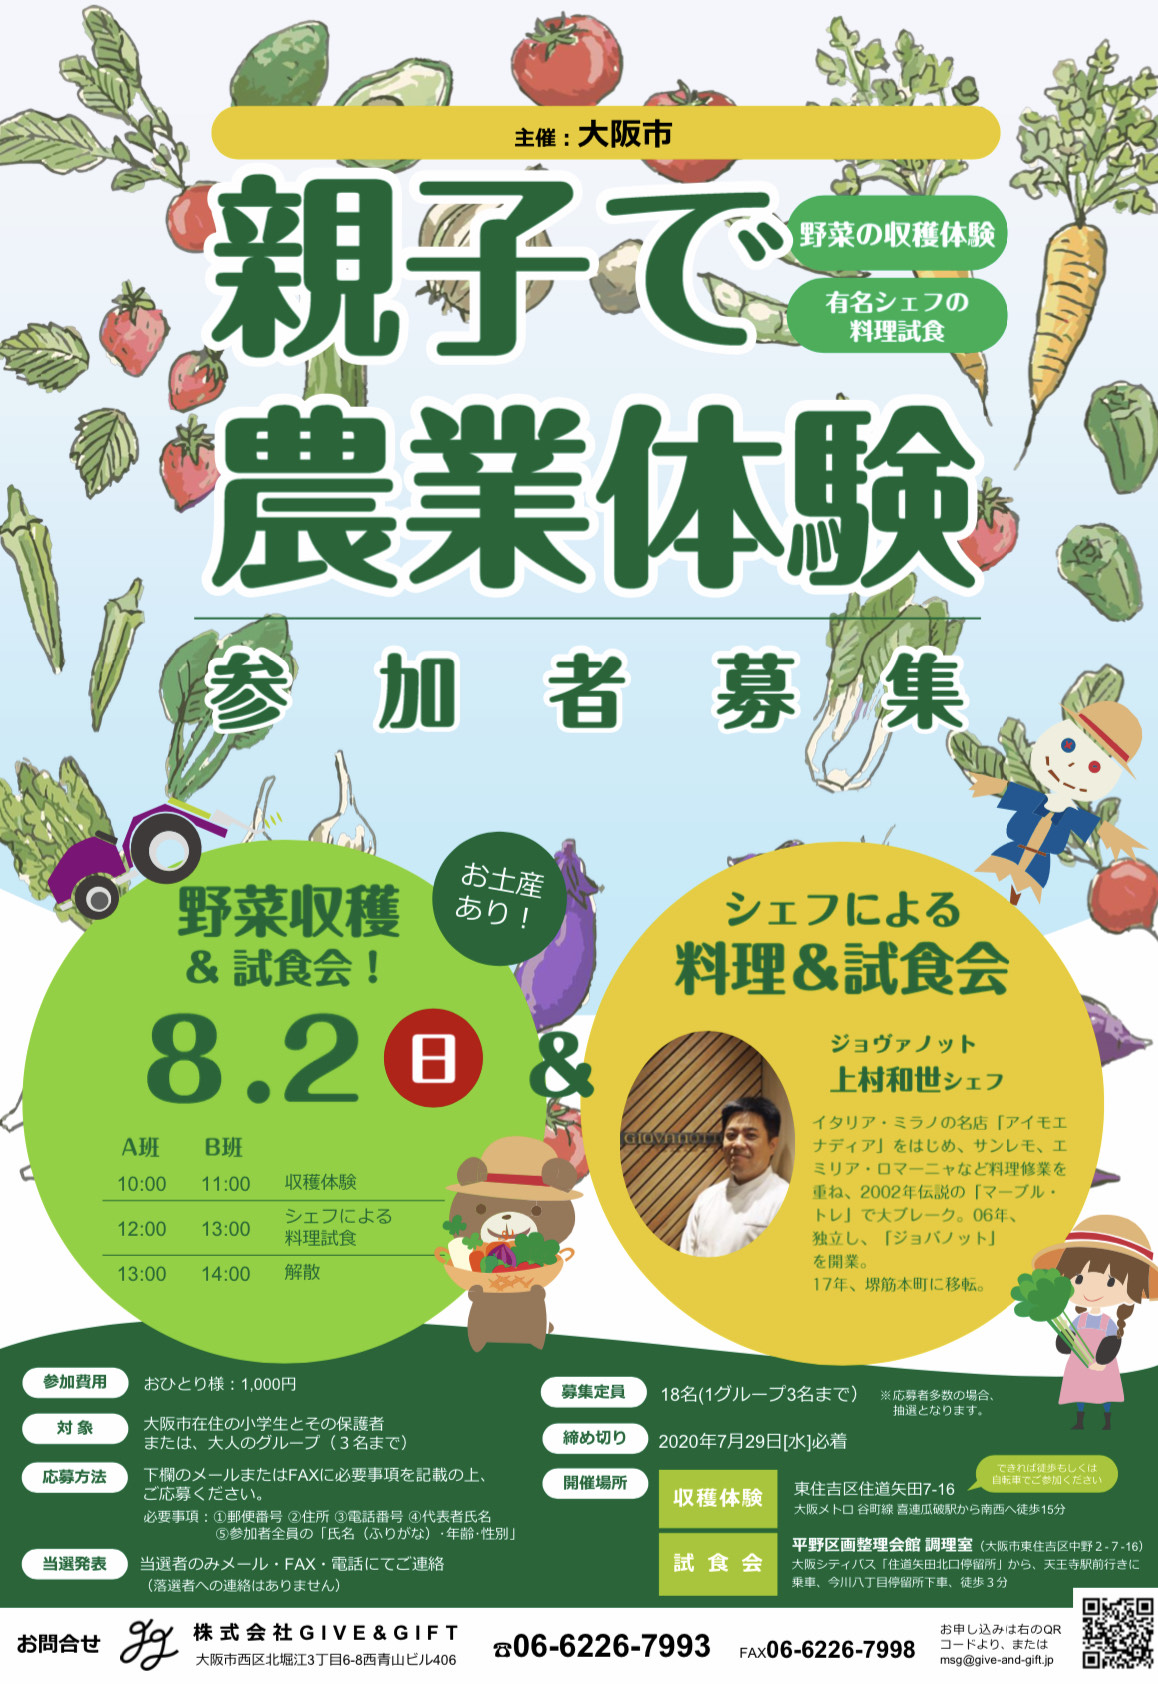 大阪市東住吉区の畑で、農業体験イベントを開催します